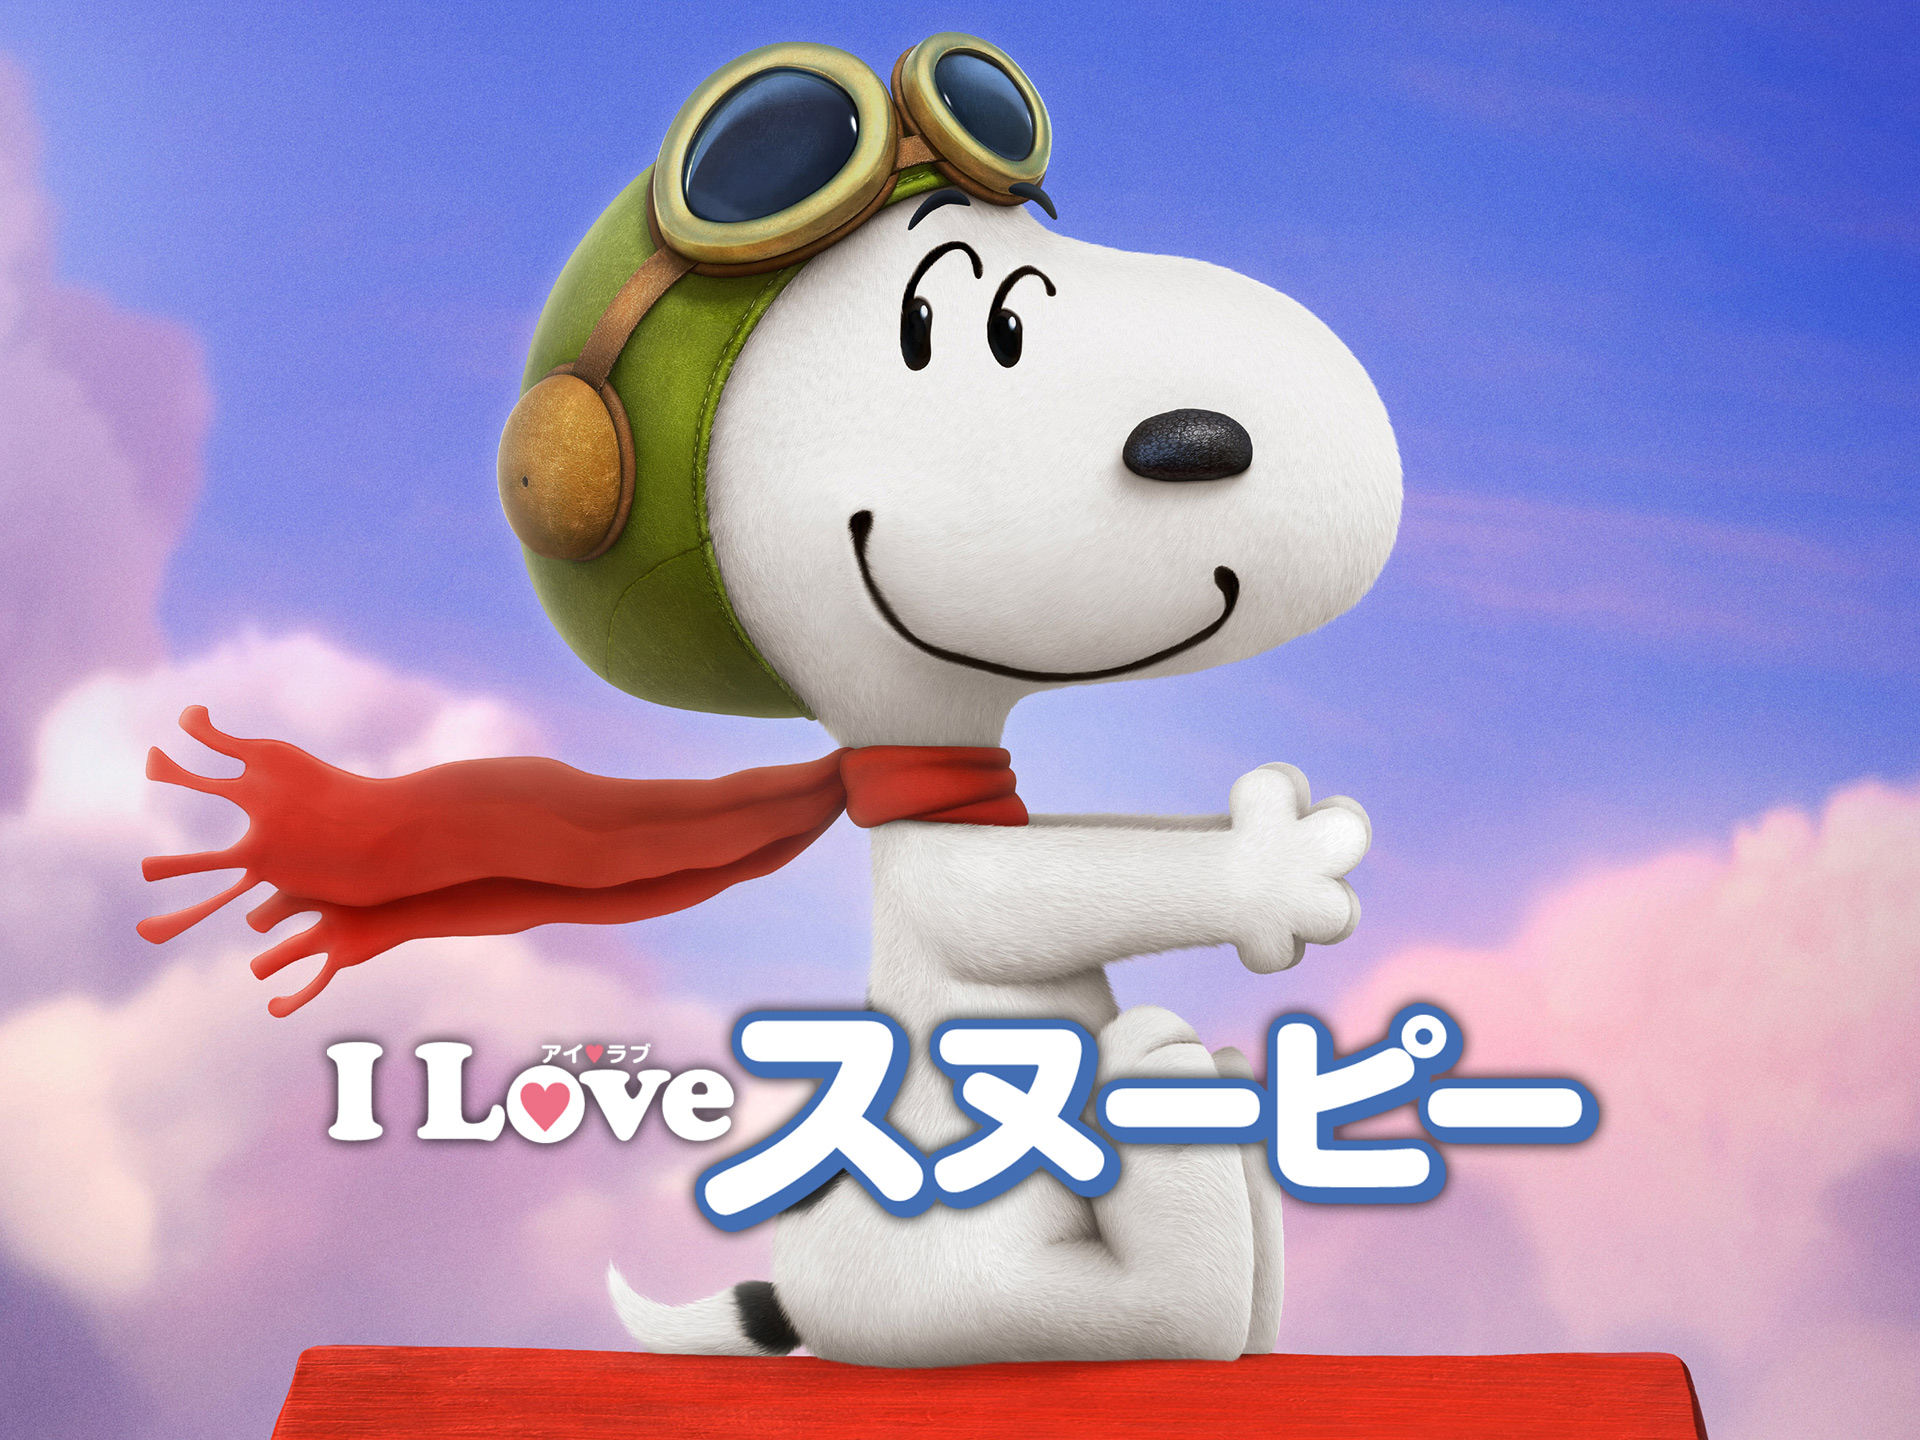 アニメ I Love スヌーピー The Peanuts Movie の動画 初月無料 動画配信サービスのビデオマーケット